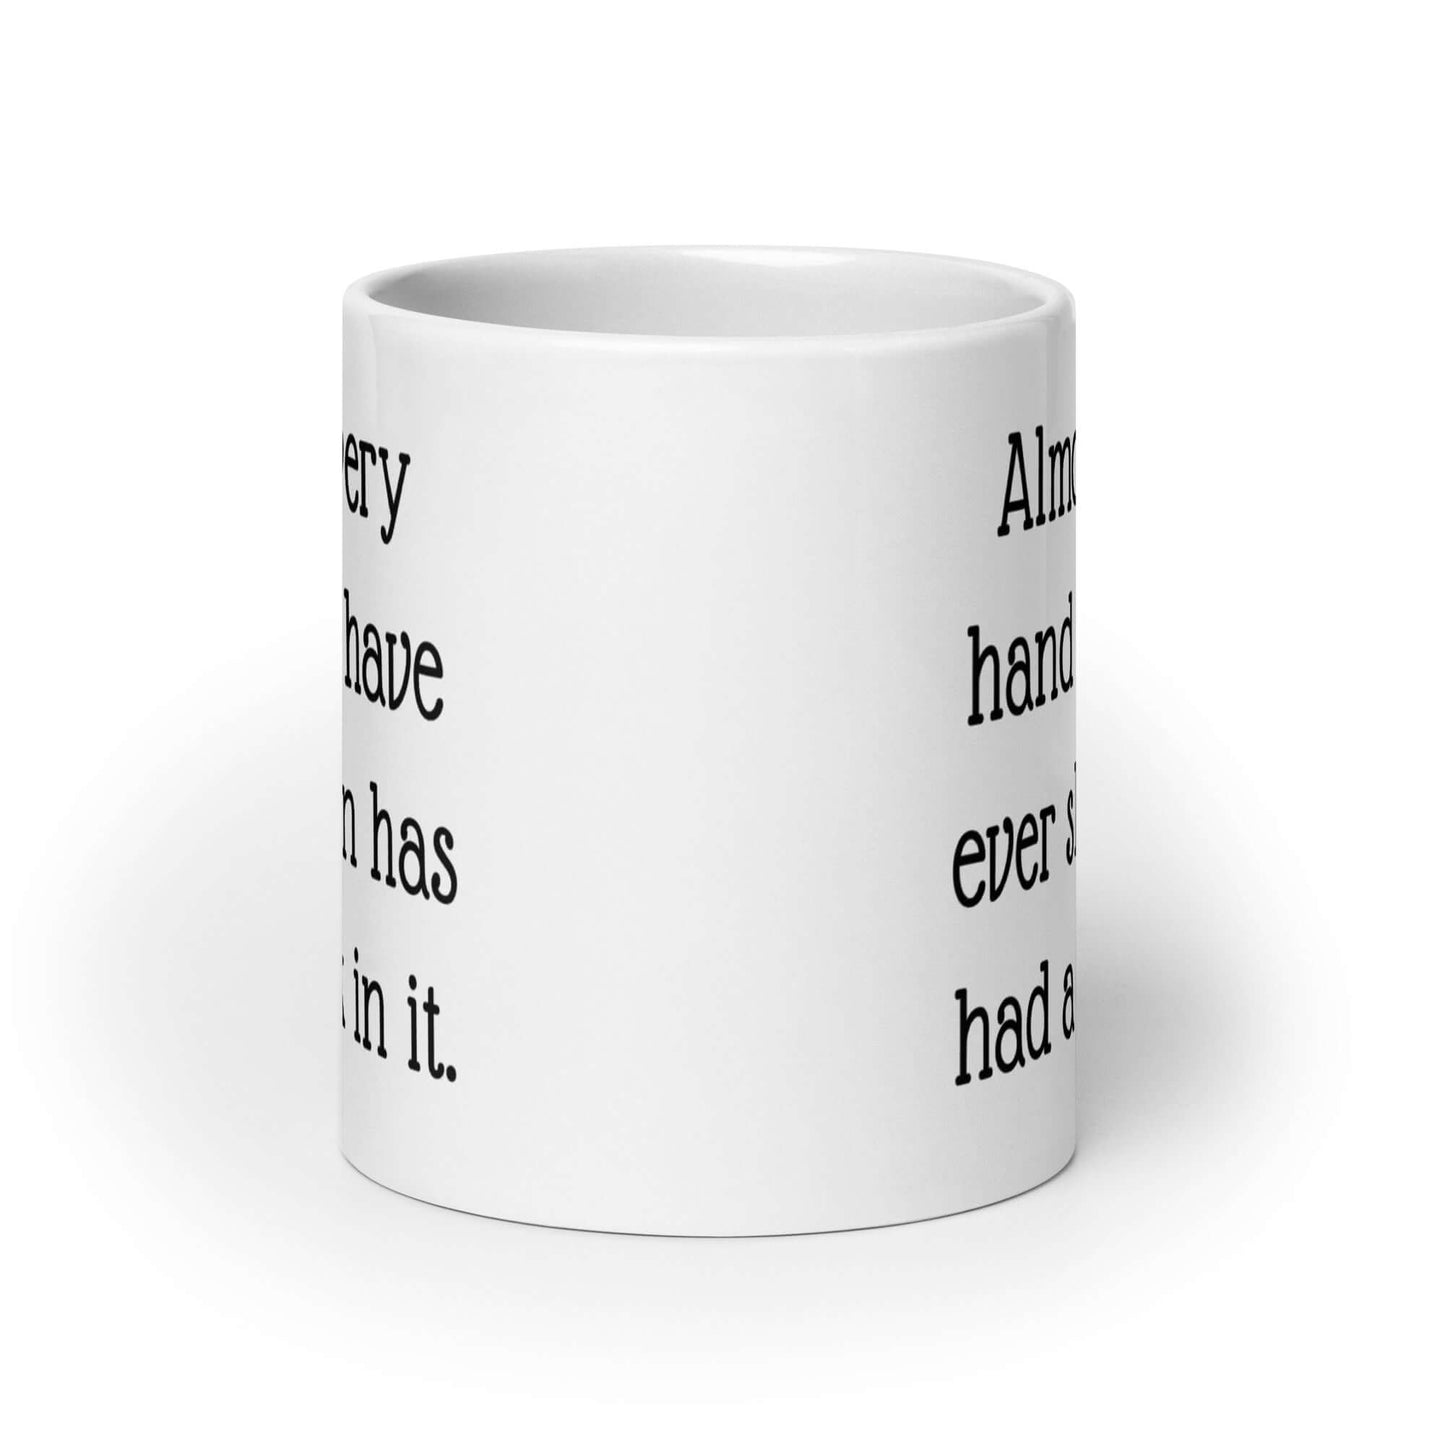 Funny dick handshake mug